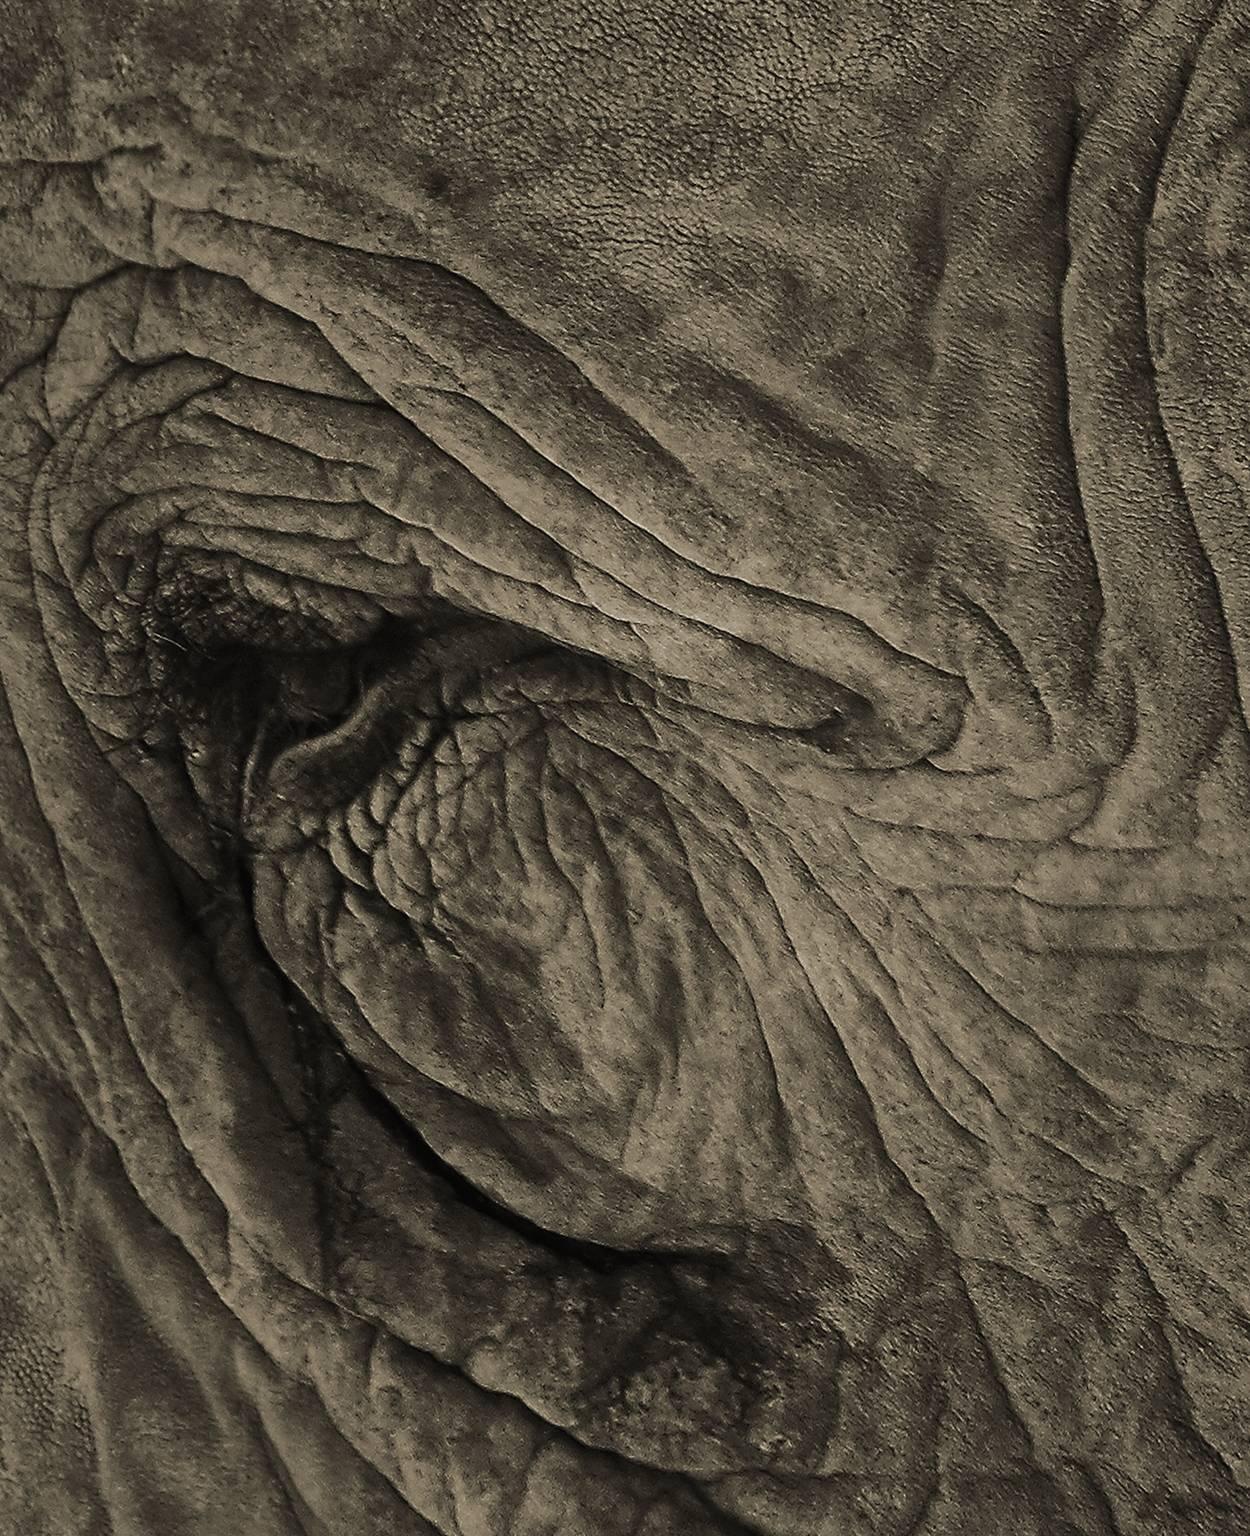 Elephant 03 - Photograph by Chris Gordaneer